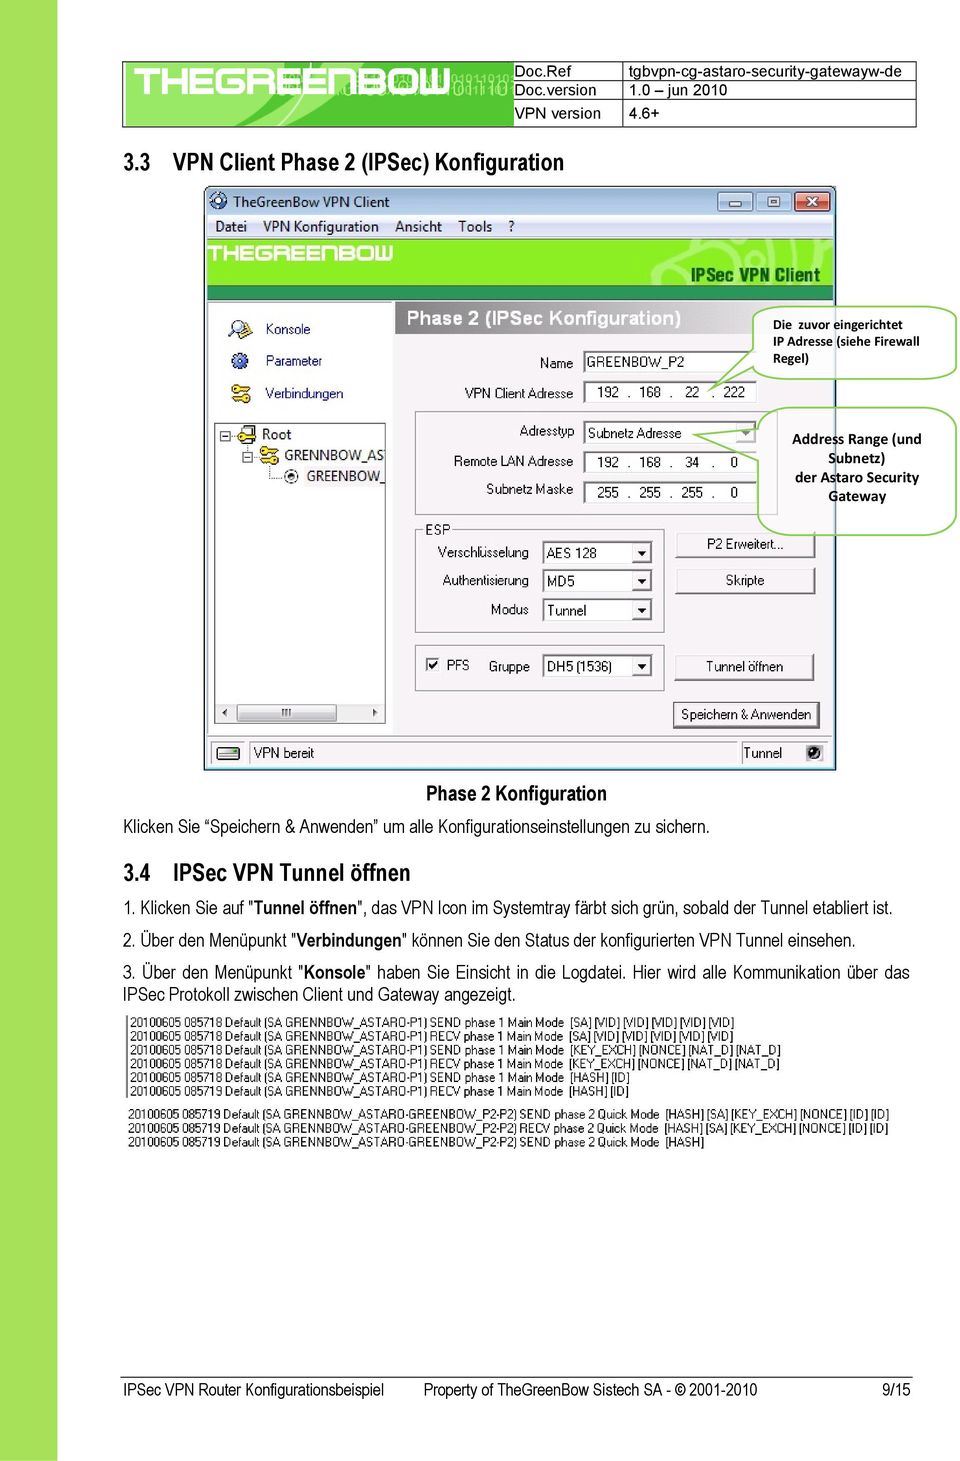 & Anwenden um alle Konfigurationseinstellungen zu sichern. 3.4 IPSec VPN Tunnel öffnen 1. Klicken Sie auf "Tunnel öffnen", das VPN Icon im Systemtray färbt sich grün, sobald der Tunnel etabliert ist.